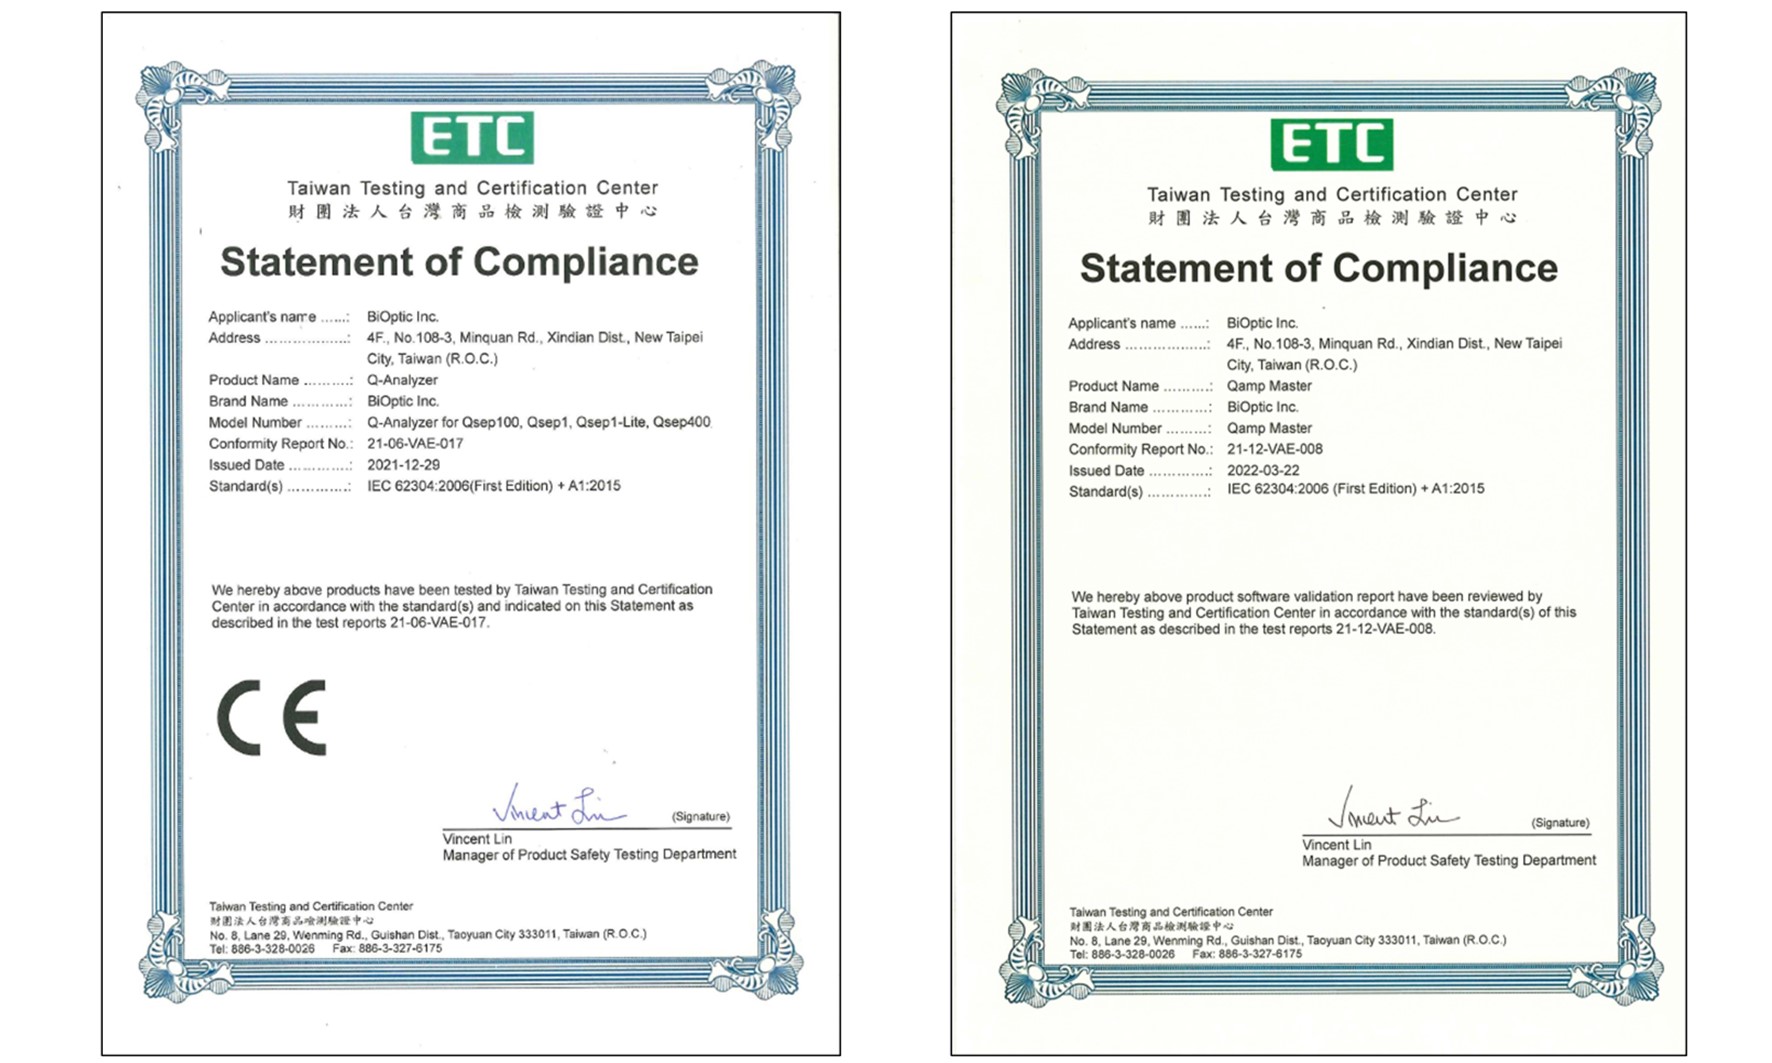 恭賀! 光鼎生技獨家開發分析軟體再獲IEC62304認證!